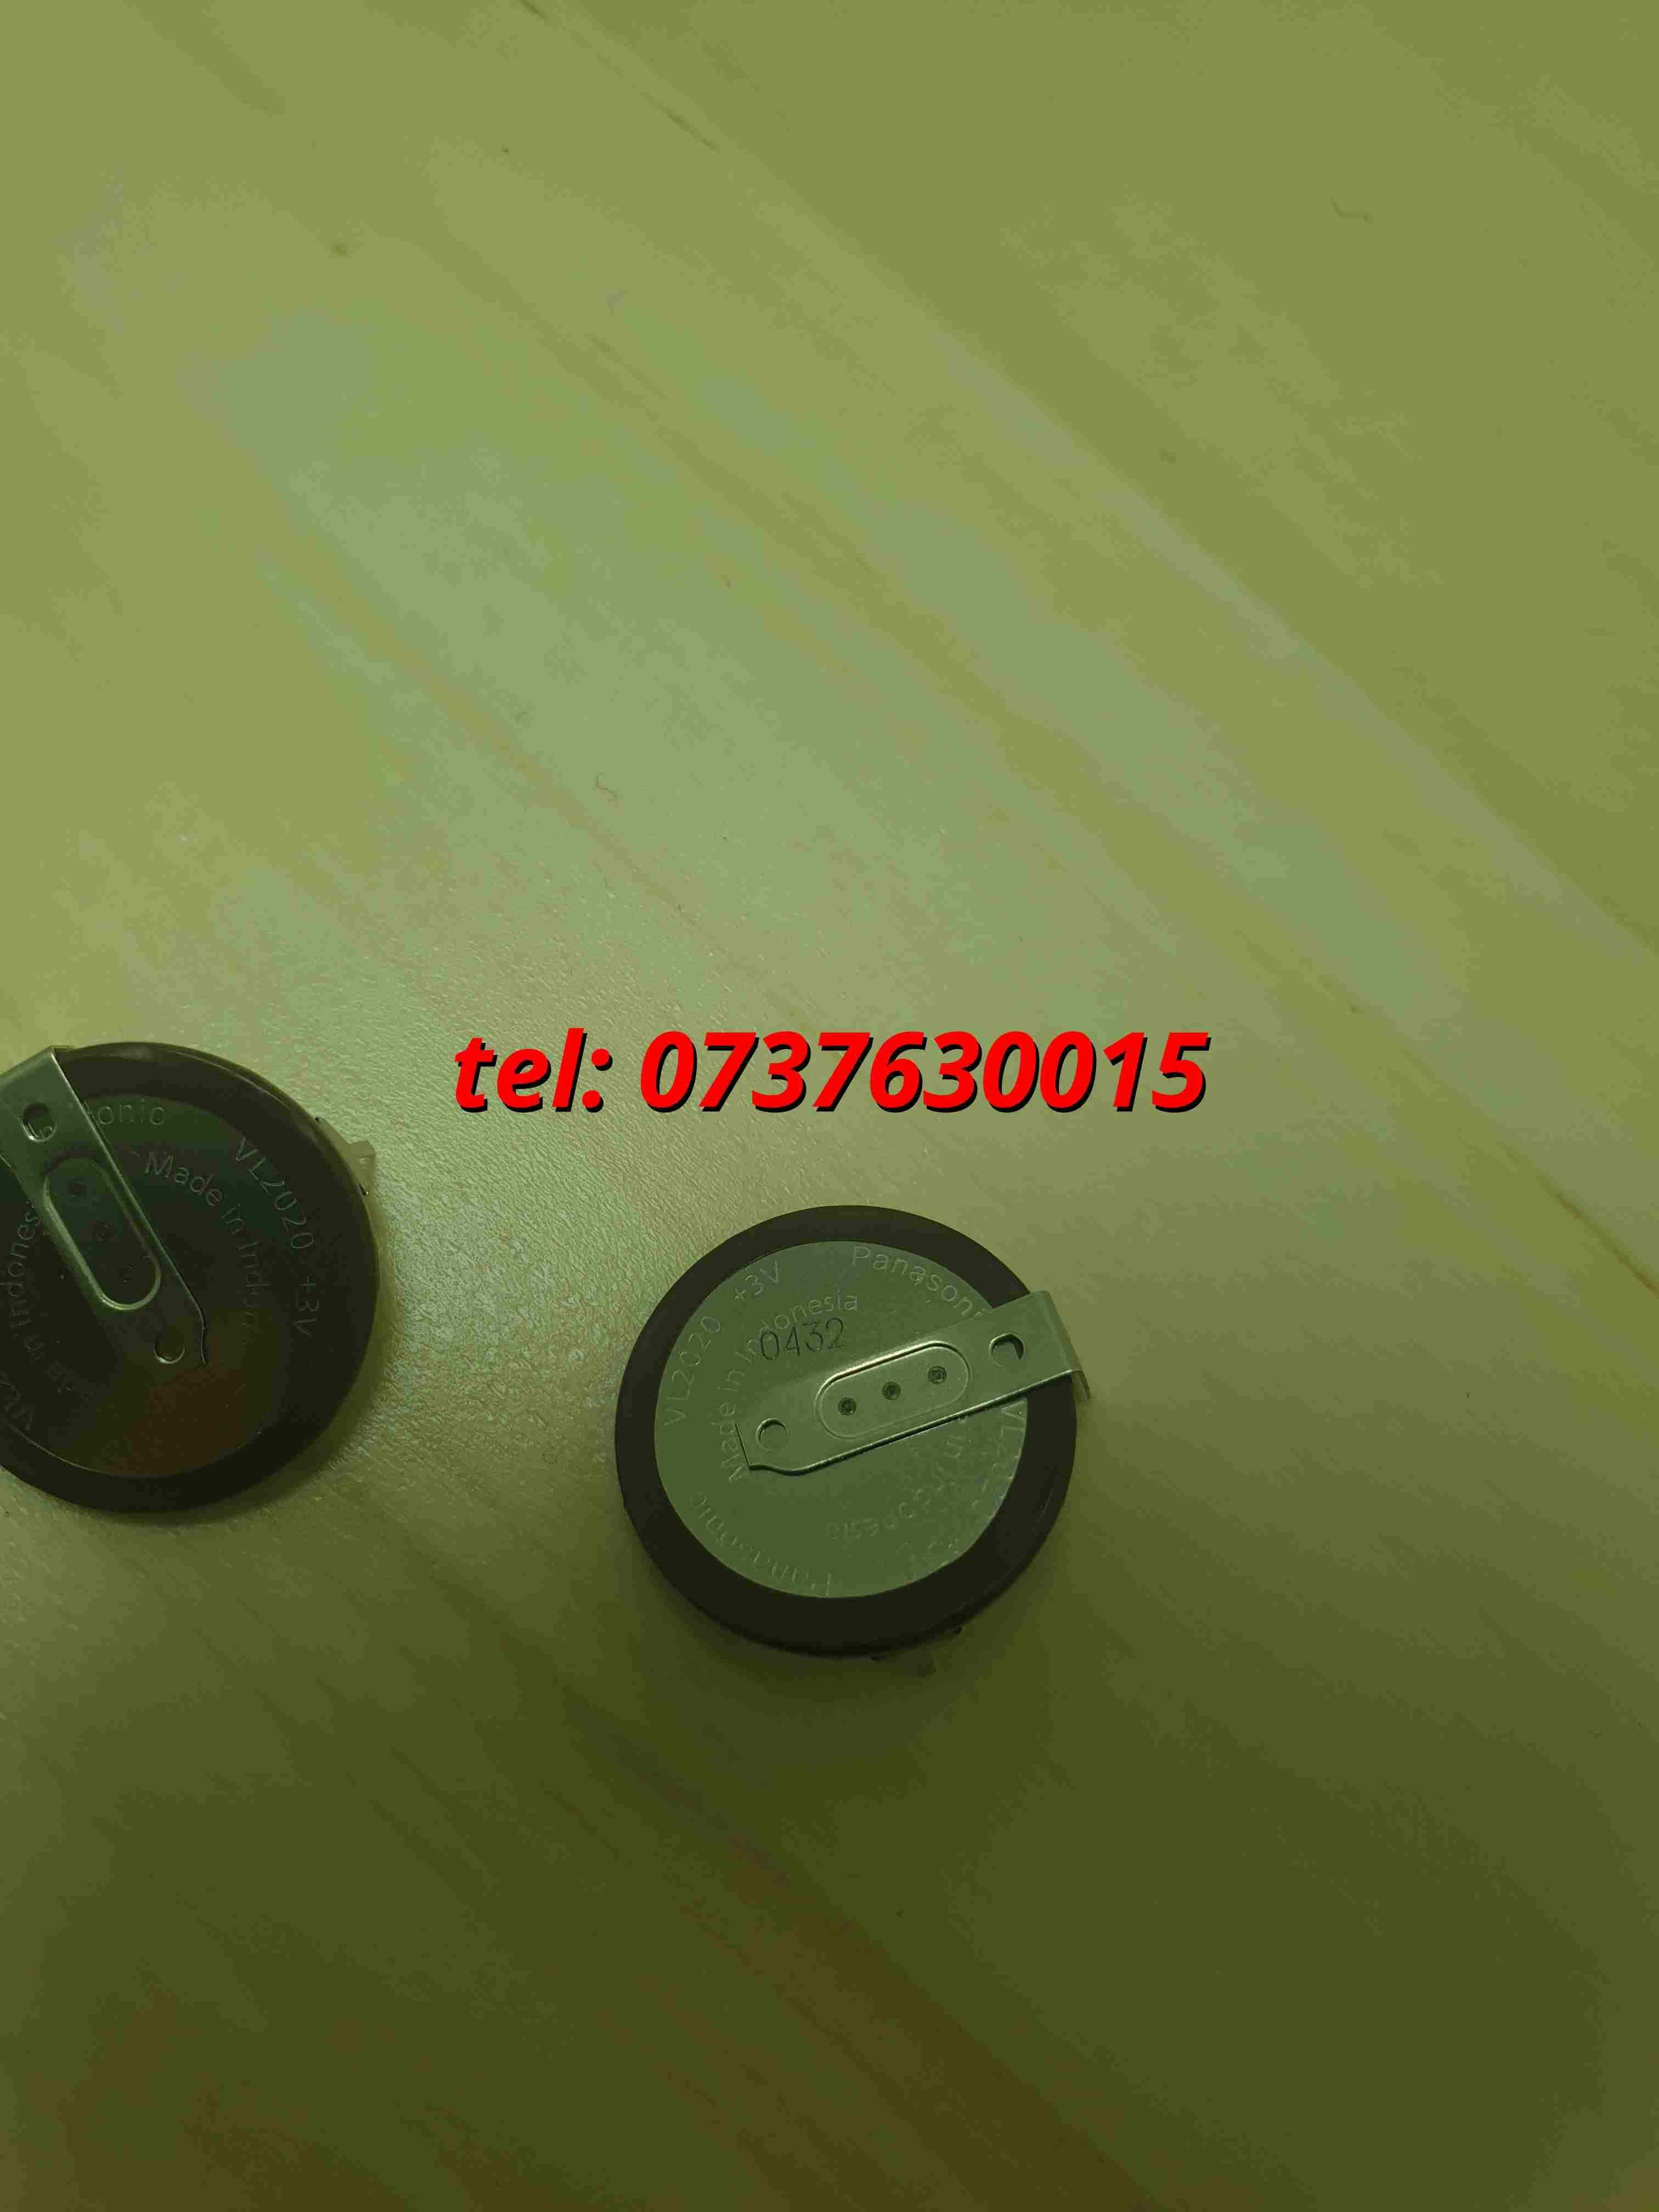 Acumulator Baterie Panasonic Vl2020 Cheie Bmw E46 E60 E90 E92 E39 E85